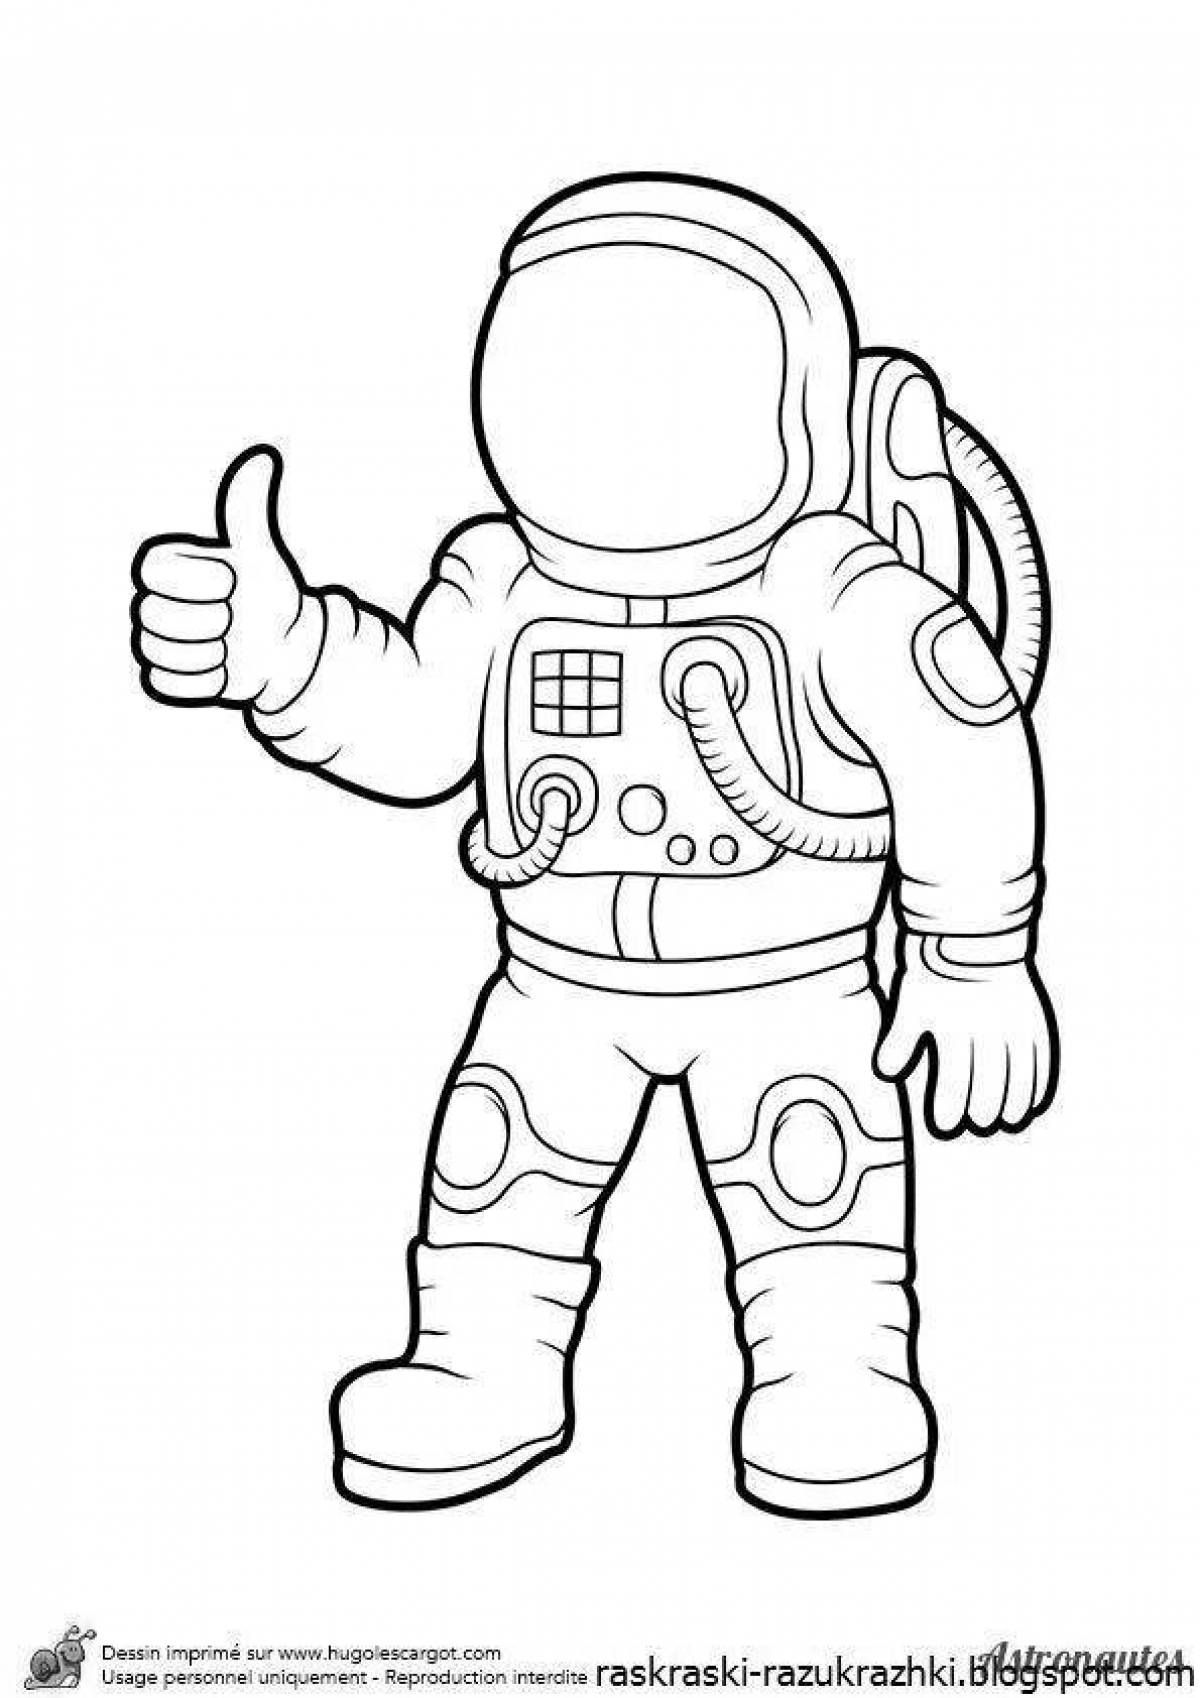 Скафандр рисунок для детей. Раскраска космонавт в скафандре. Космонавт раскраска для детей. Раскраска Космонавта в скафандре для детей. Космонавт раскраска для малышей.